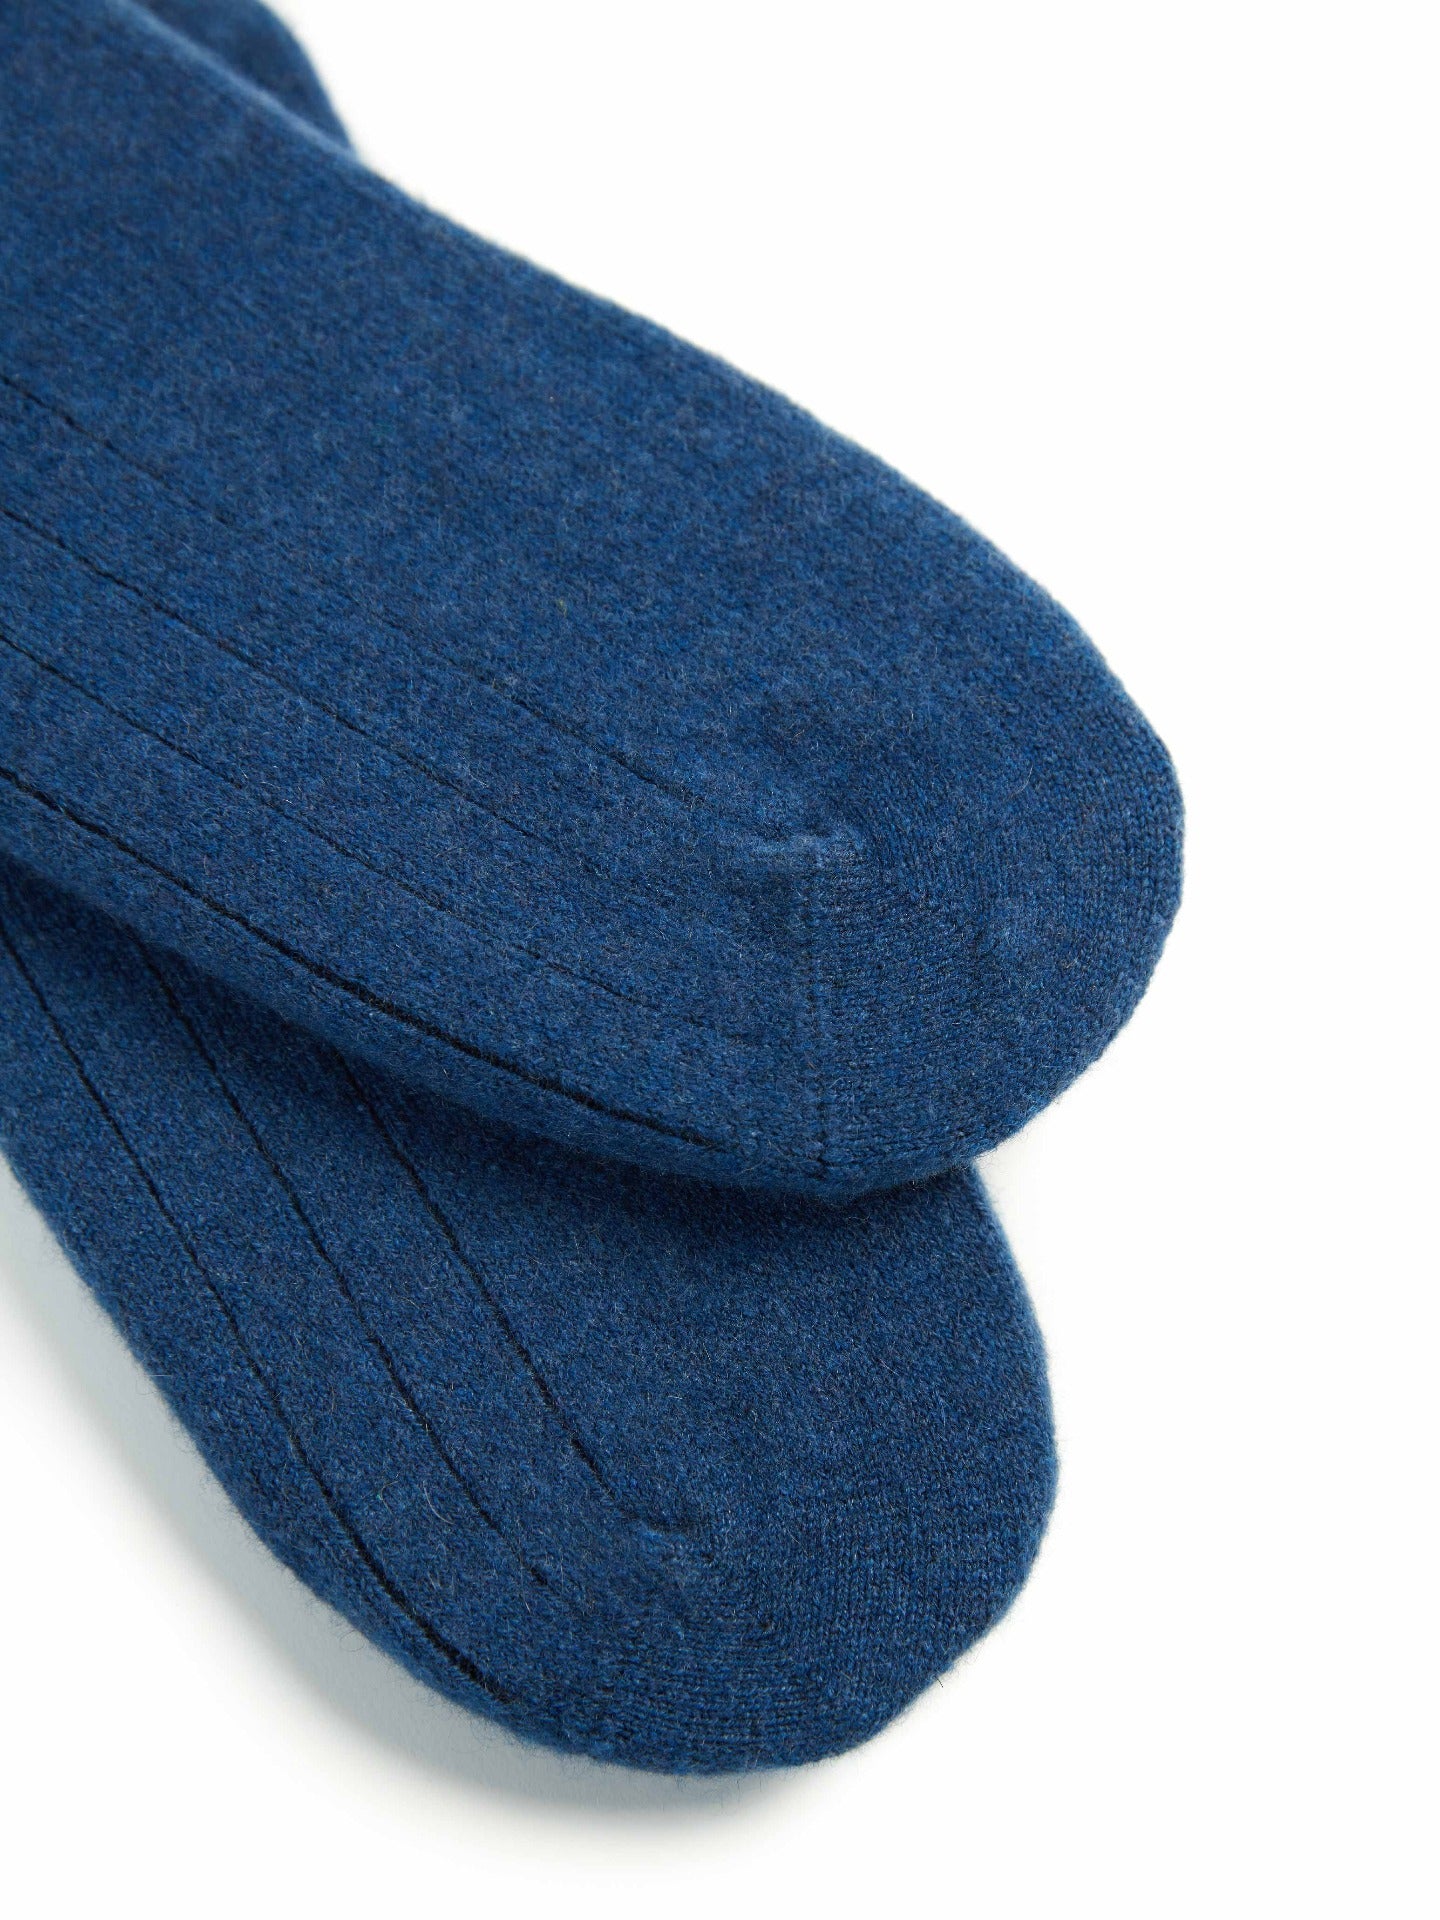 Unisex Cashmere Trim Knit Bed Socks Ensign Blue  - Gobi Cashmere